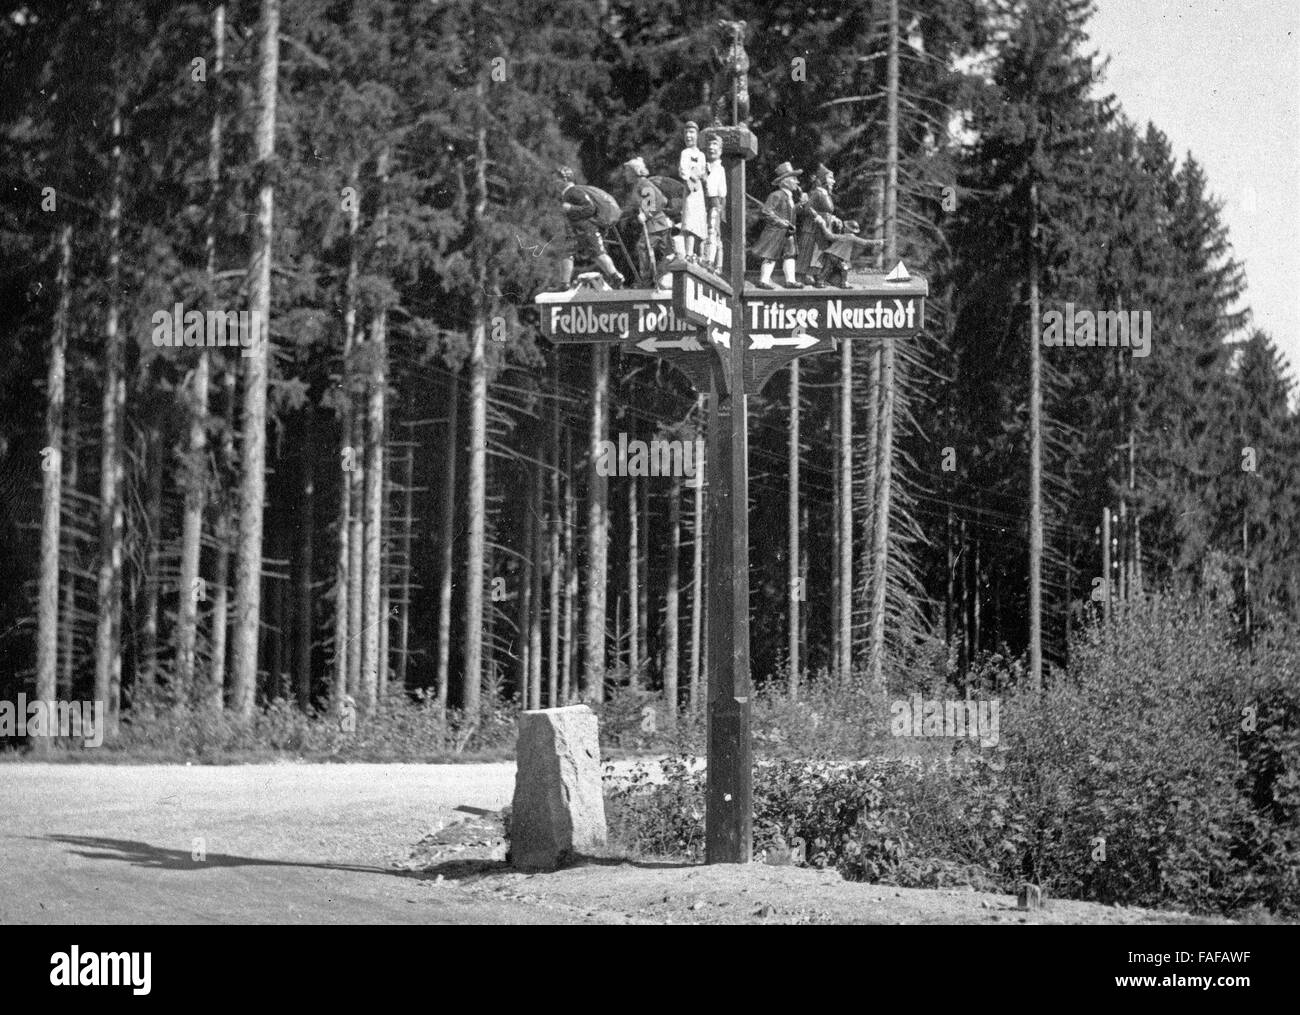 Wegweiser nach Todtnau und Titisee Neustadt im Schwarzwald, Deutschland 1930er Jahre. Fingerpost to Todtnau and Lake Titisee Neustadt in Black Forest, Germany 1930s. Stock Photo